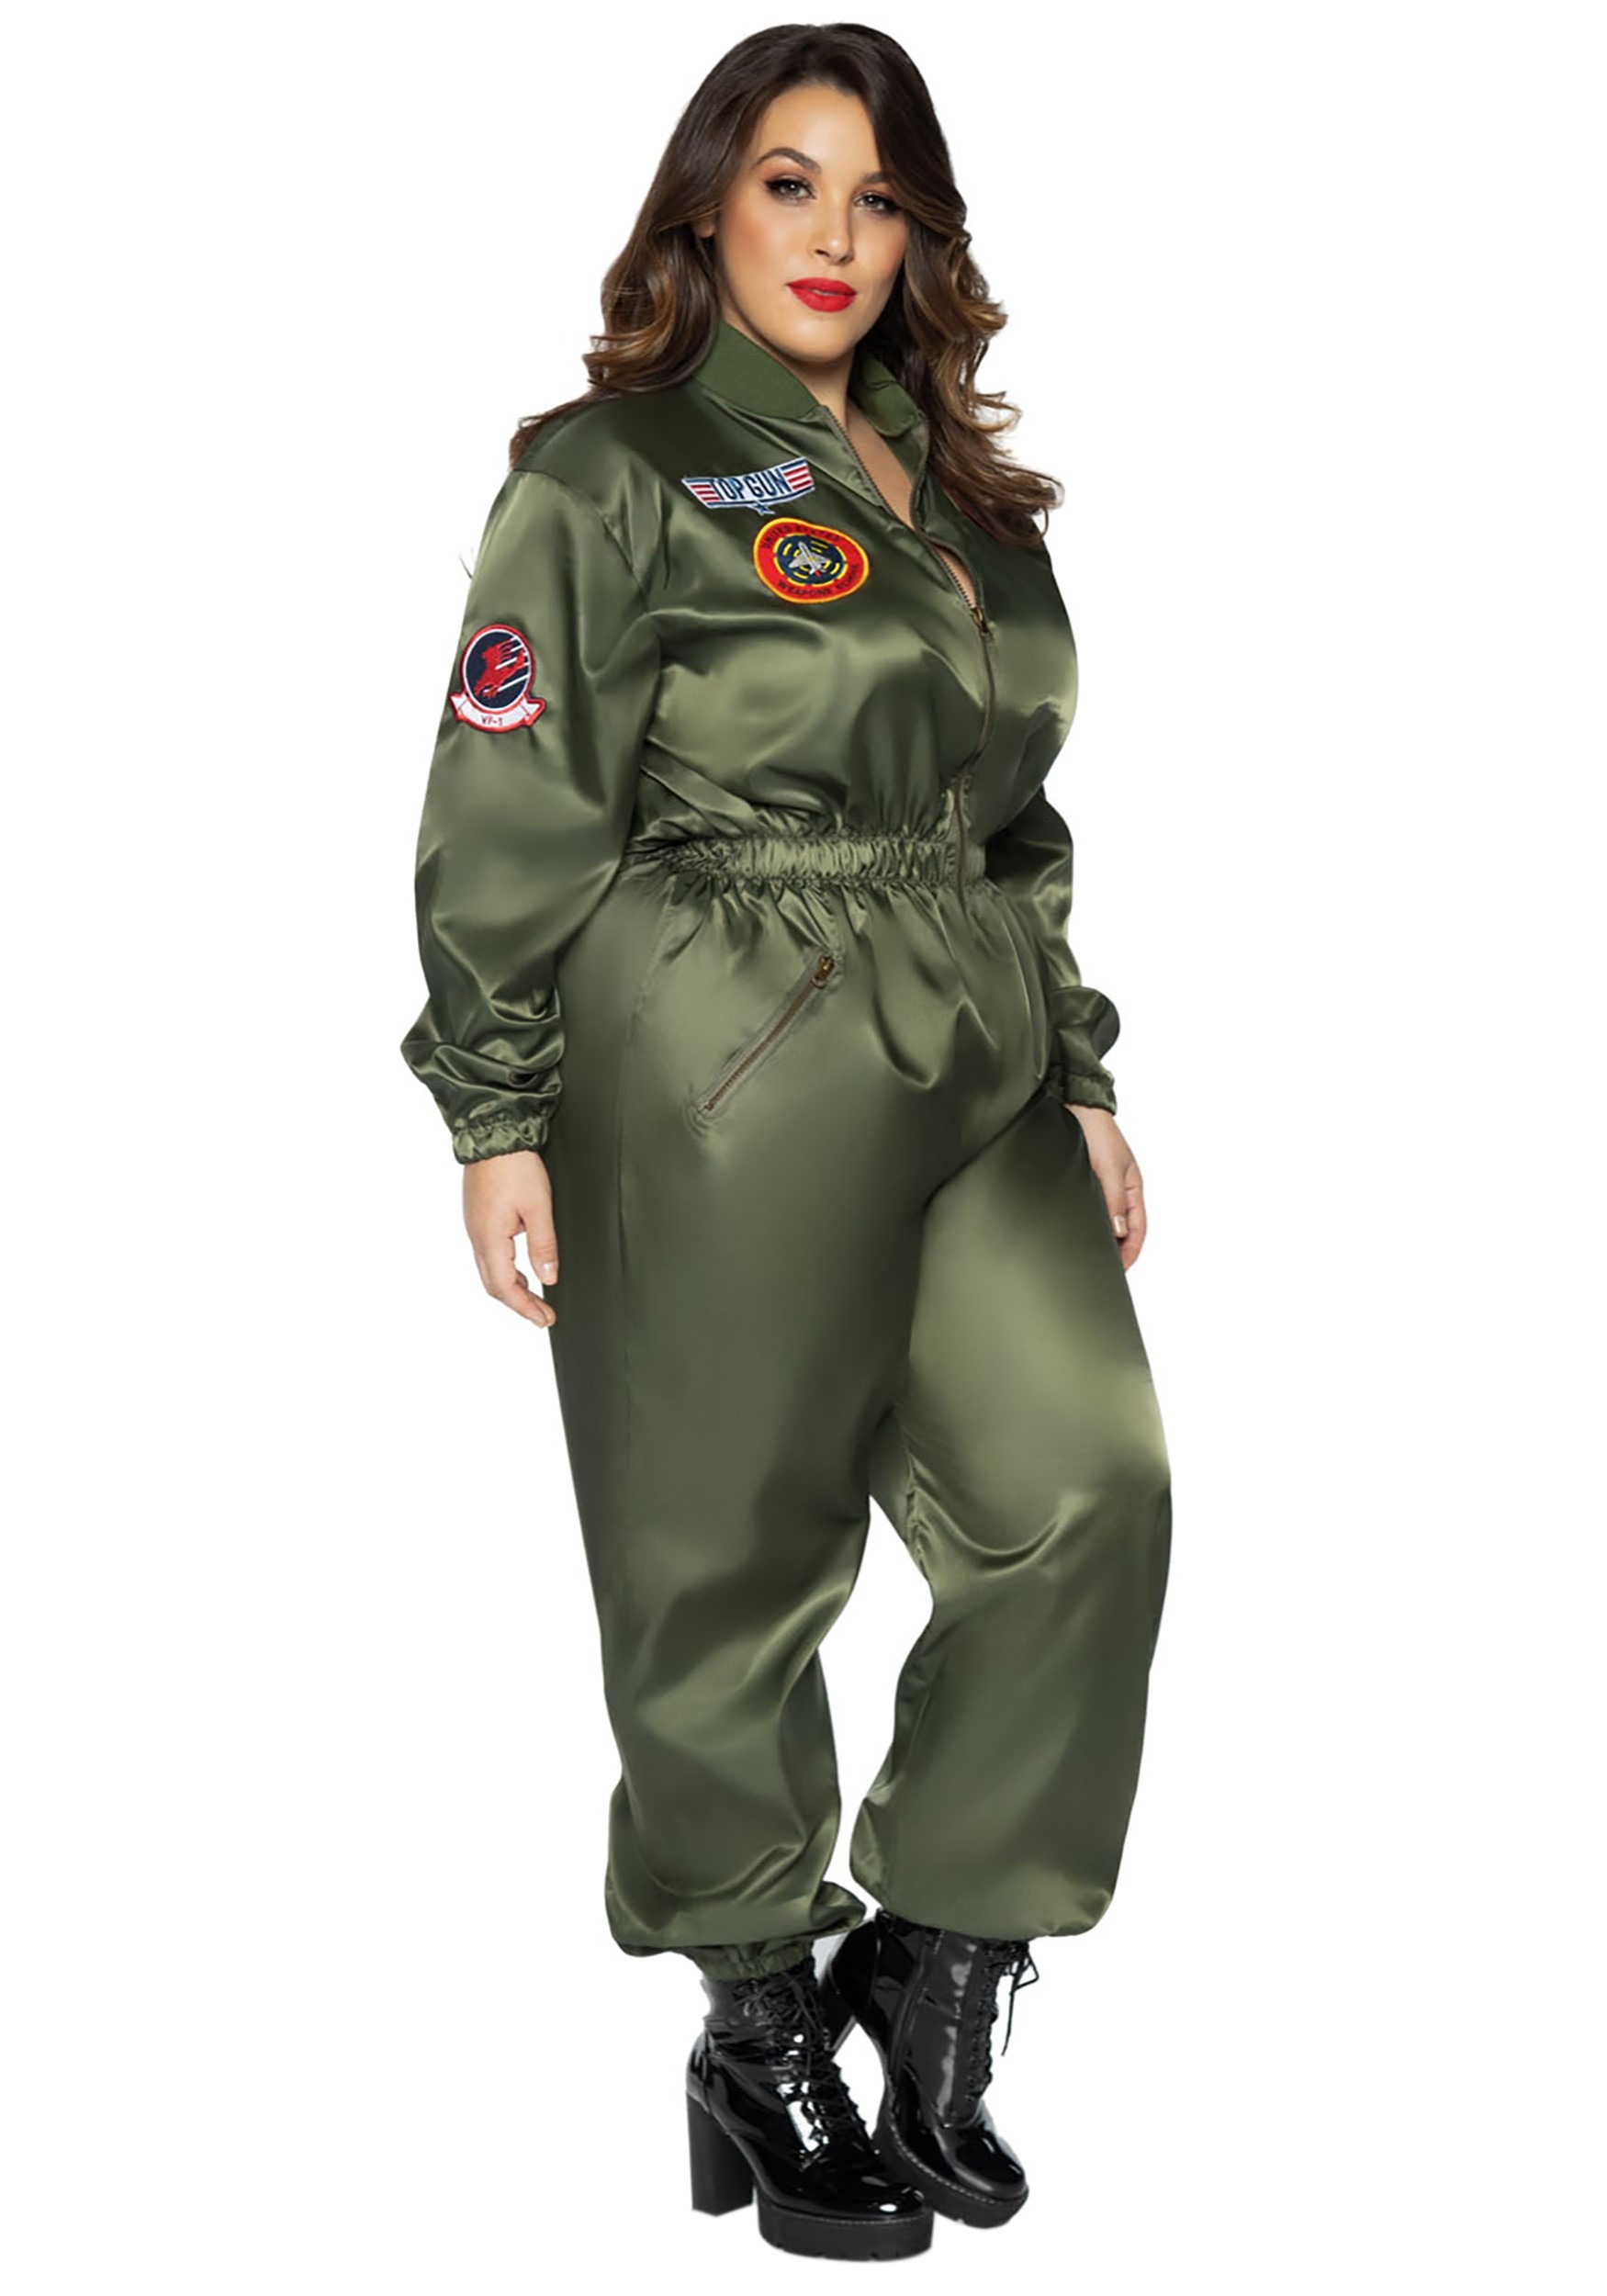 Photos - Fancy Dress MKW Leg Avenue Women's Plus Size Top Gun Flight Suit Costume Green LETG86931X 